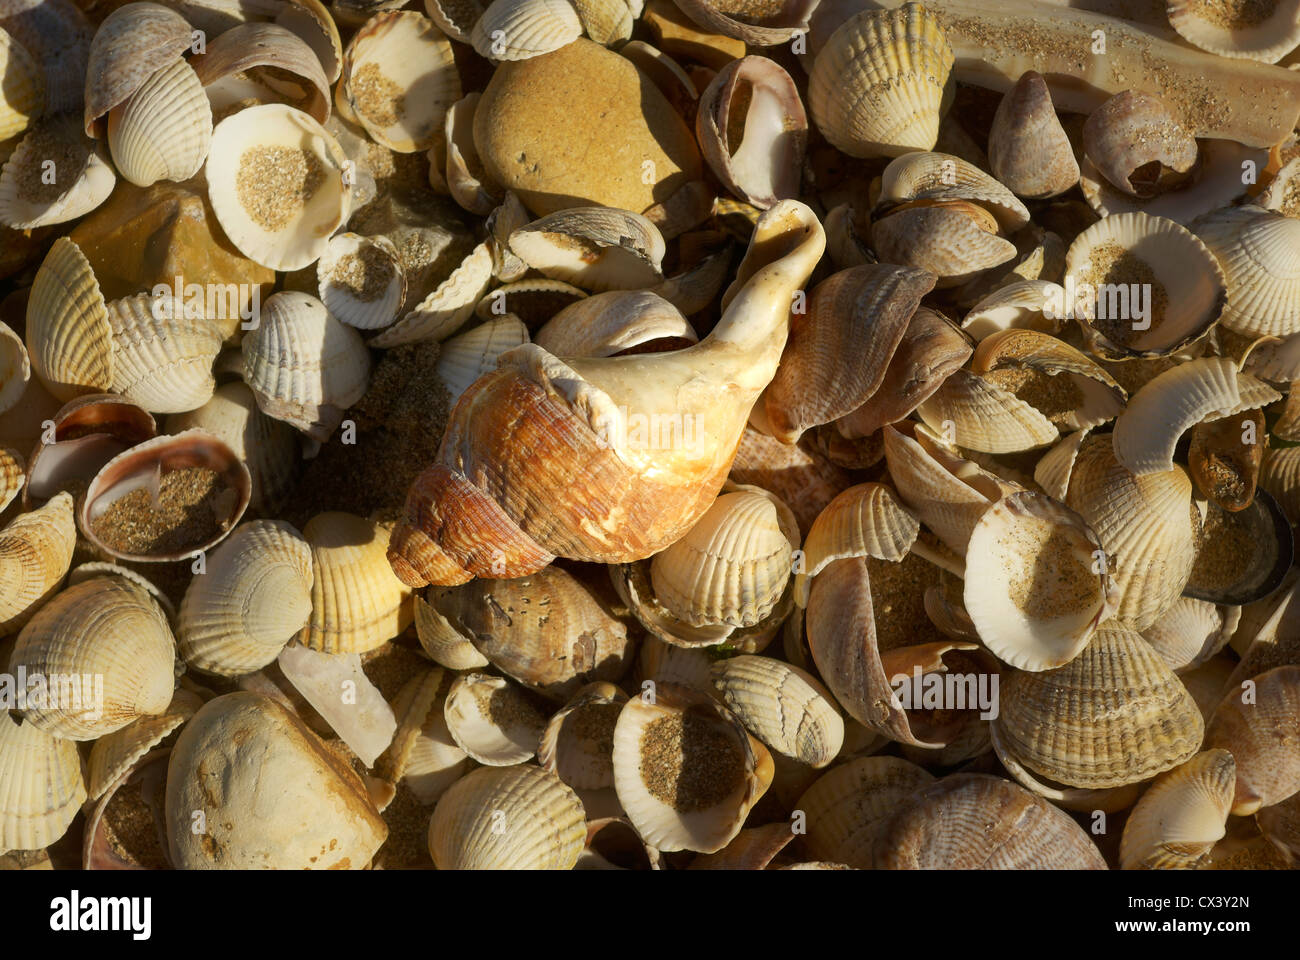 Many sea shells on a beach Stock Photo